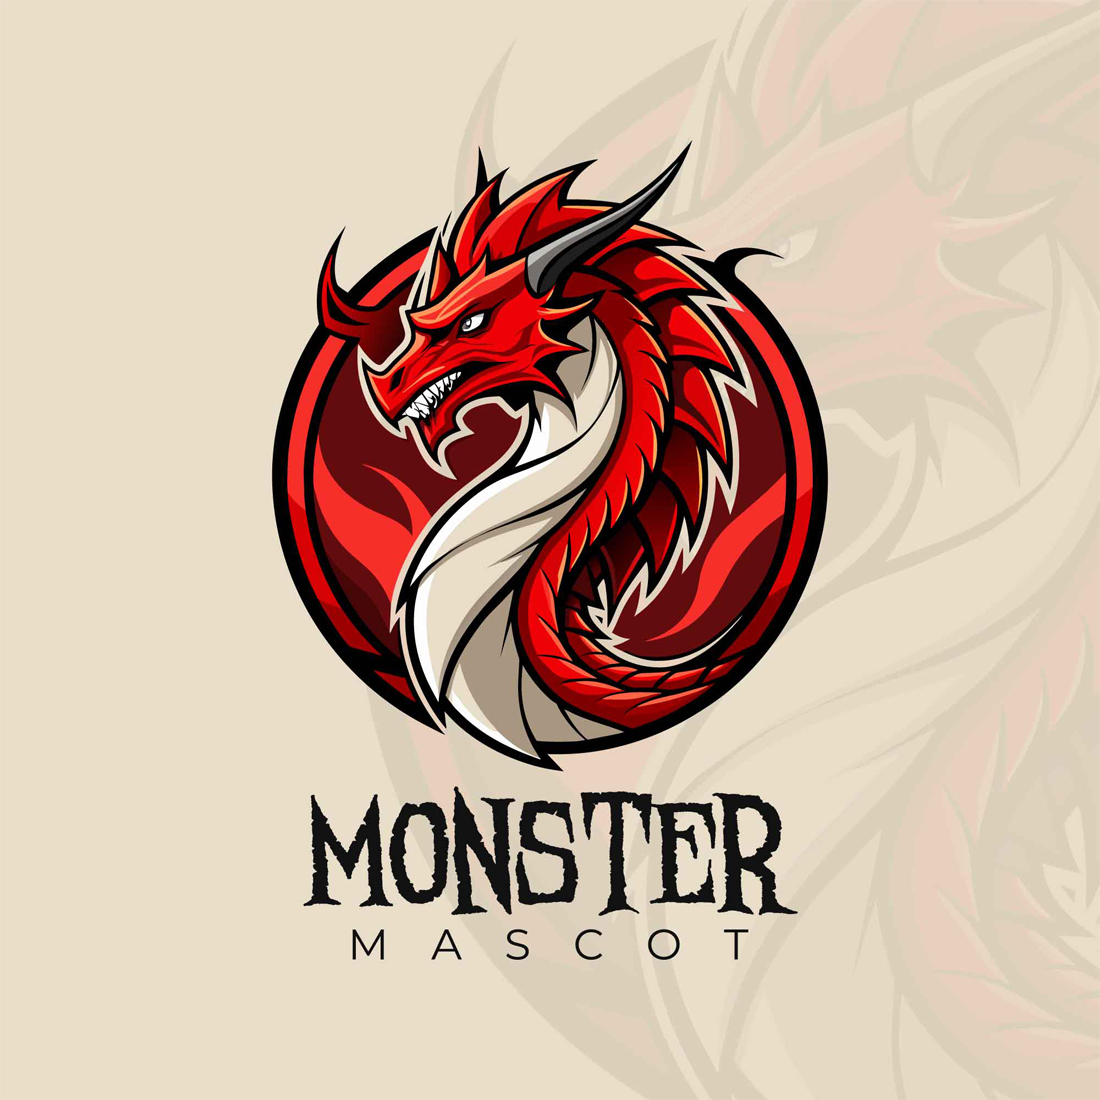 Free Dragon Gaming Mascot Logo cover image.